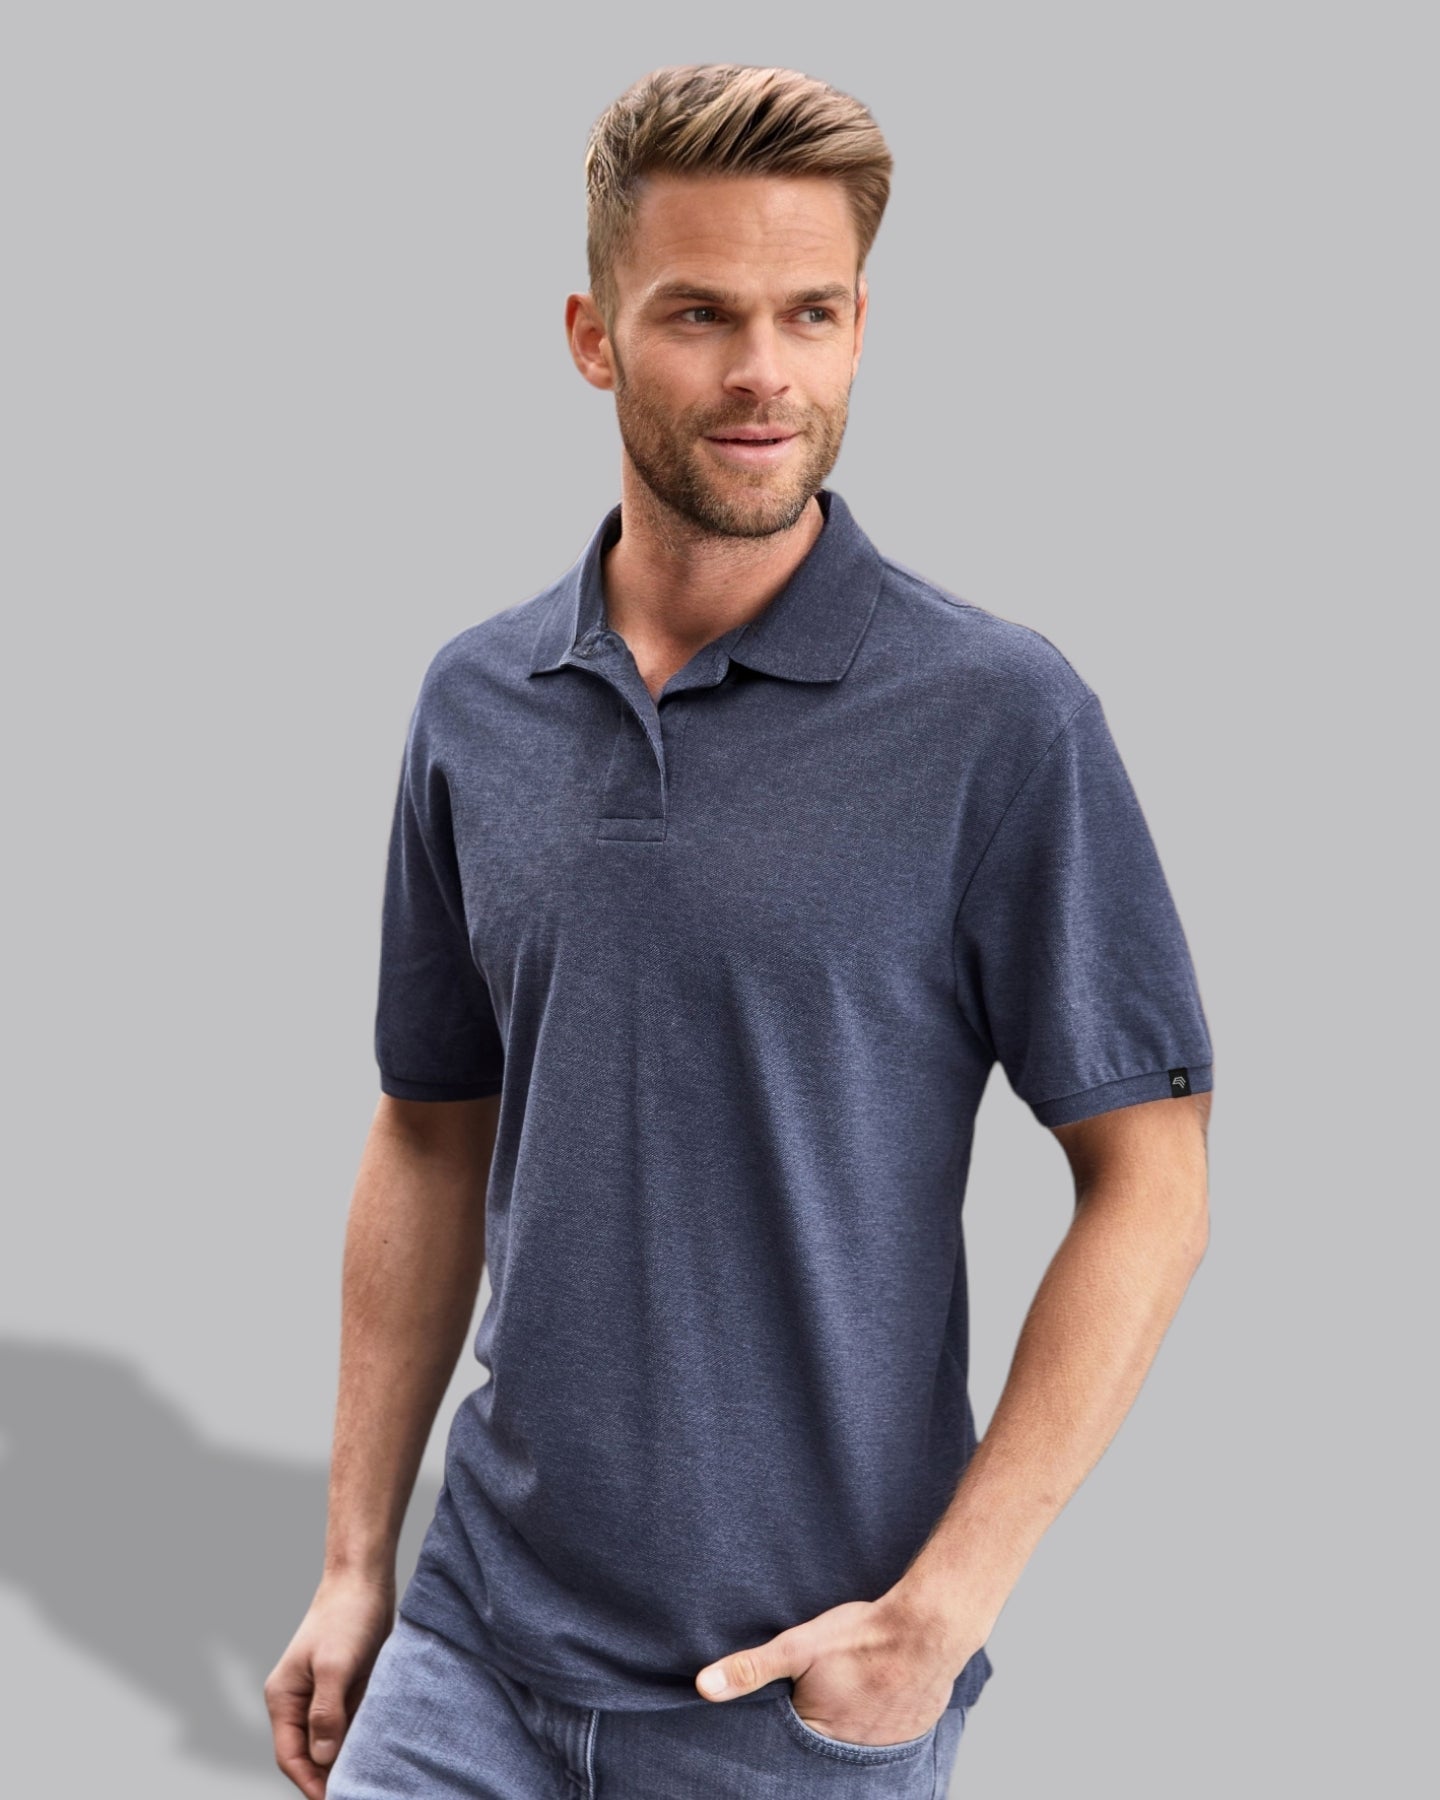 ― % ― JAN 8010/10A ― Men's Bio-Baumwolle Polo Shirt - Irish Grün [2XL]